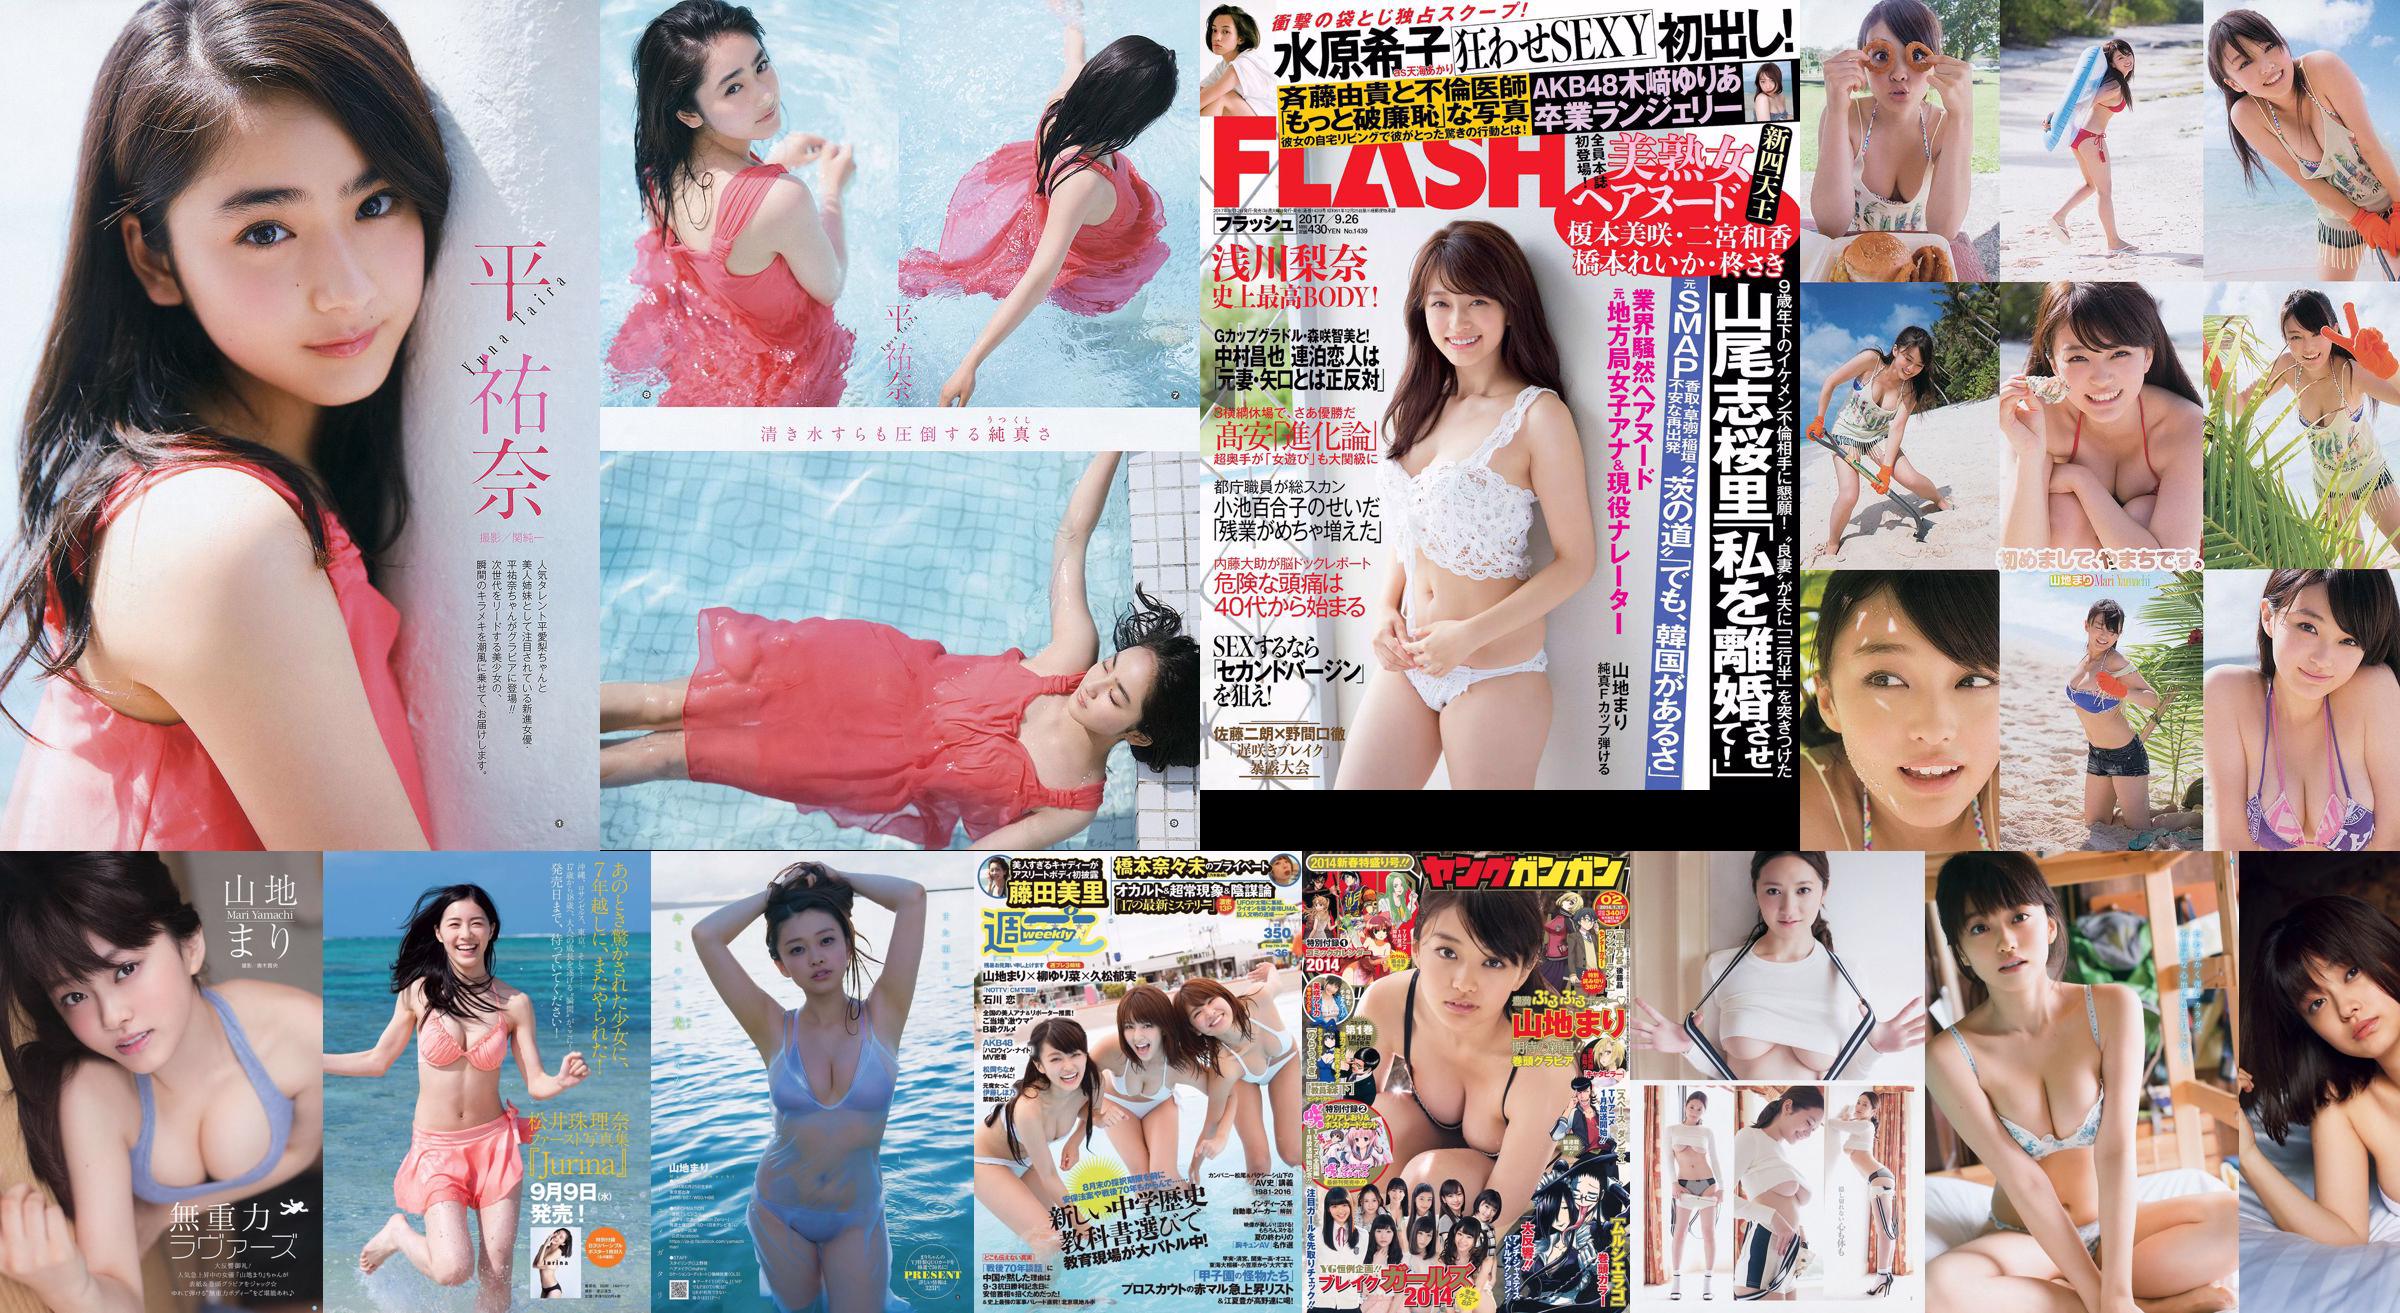 Montagna Mari Matsumoto Erika Tang Tian Erika Shionji Misumi Takahashi Noce Watanabe Miyuki [Weekly Playboy] 2016 No.30 Photo Magazine No.16e713 Pagina 3